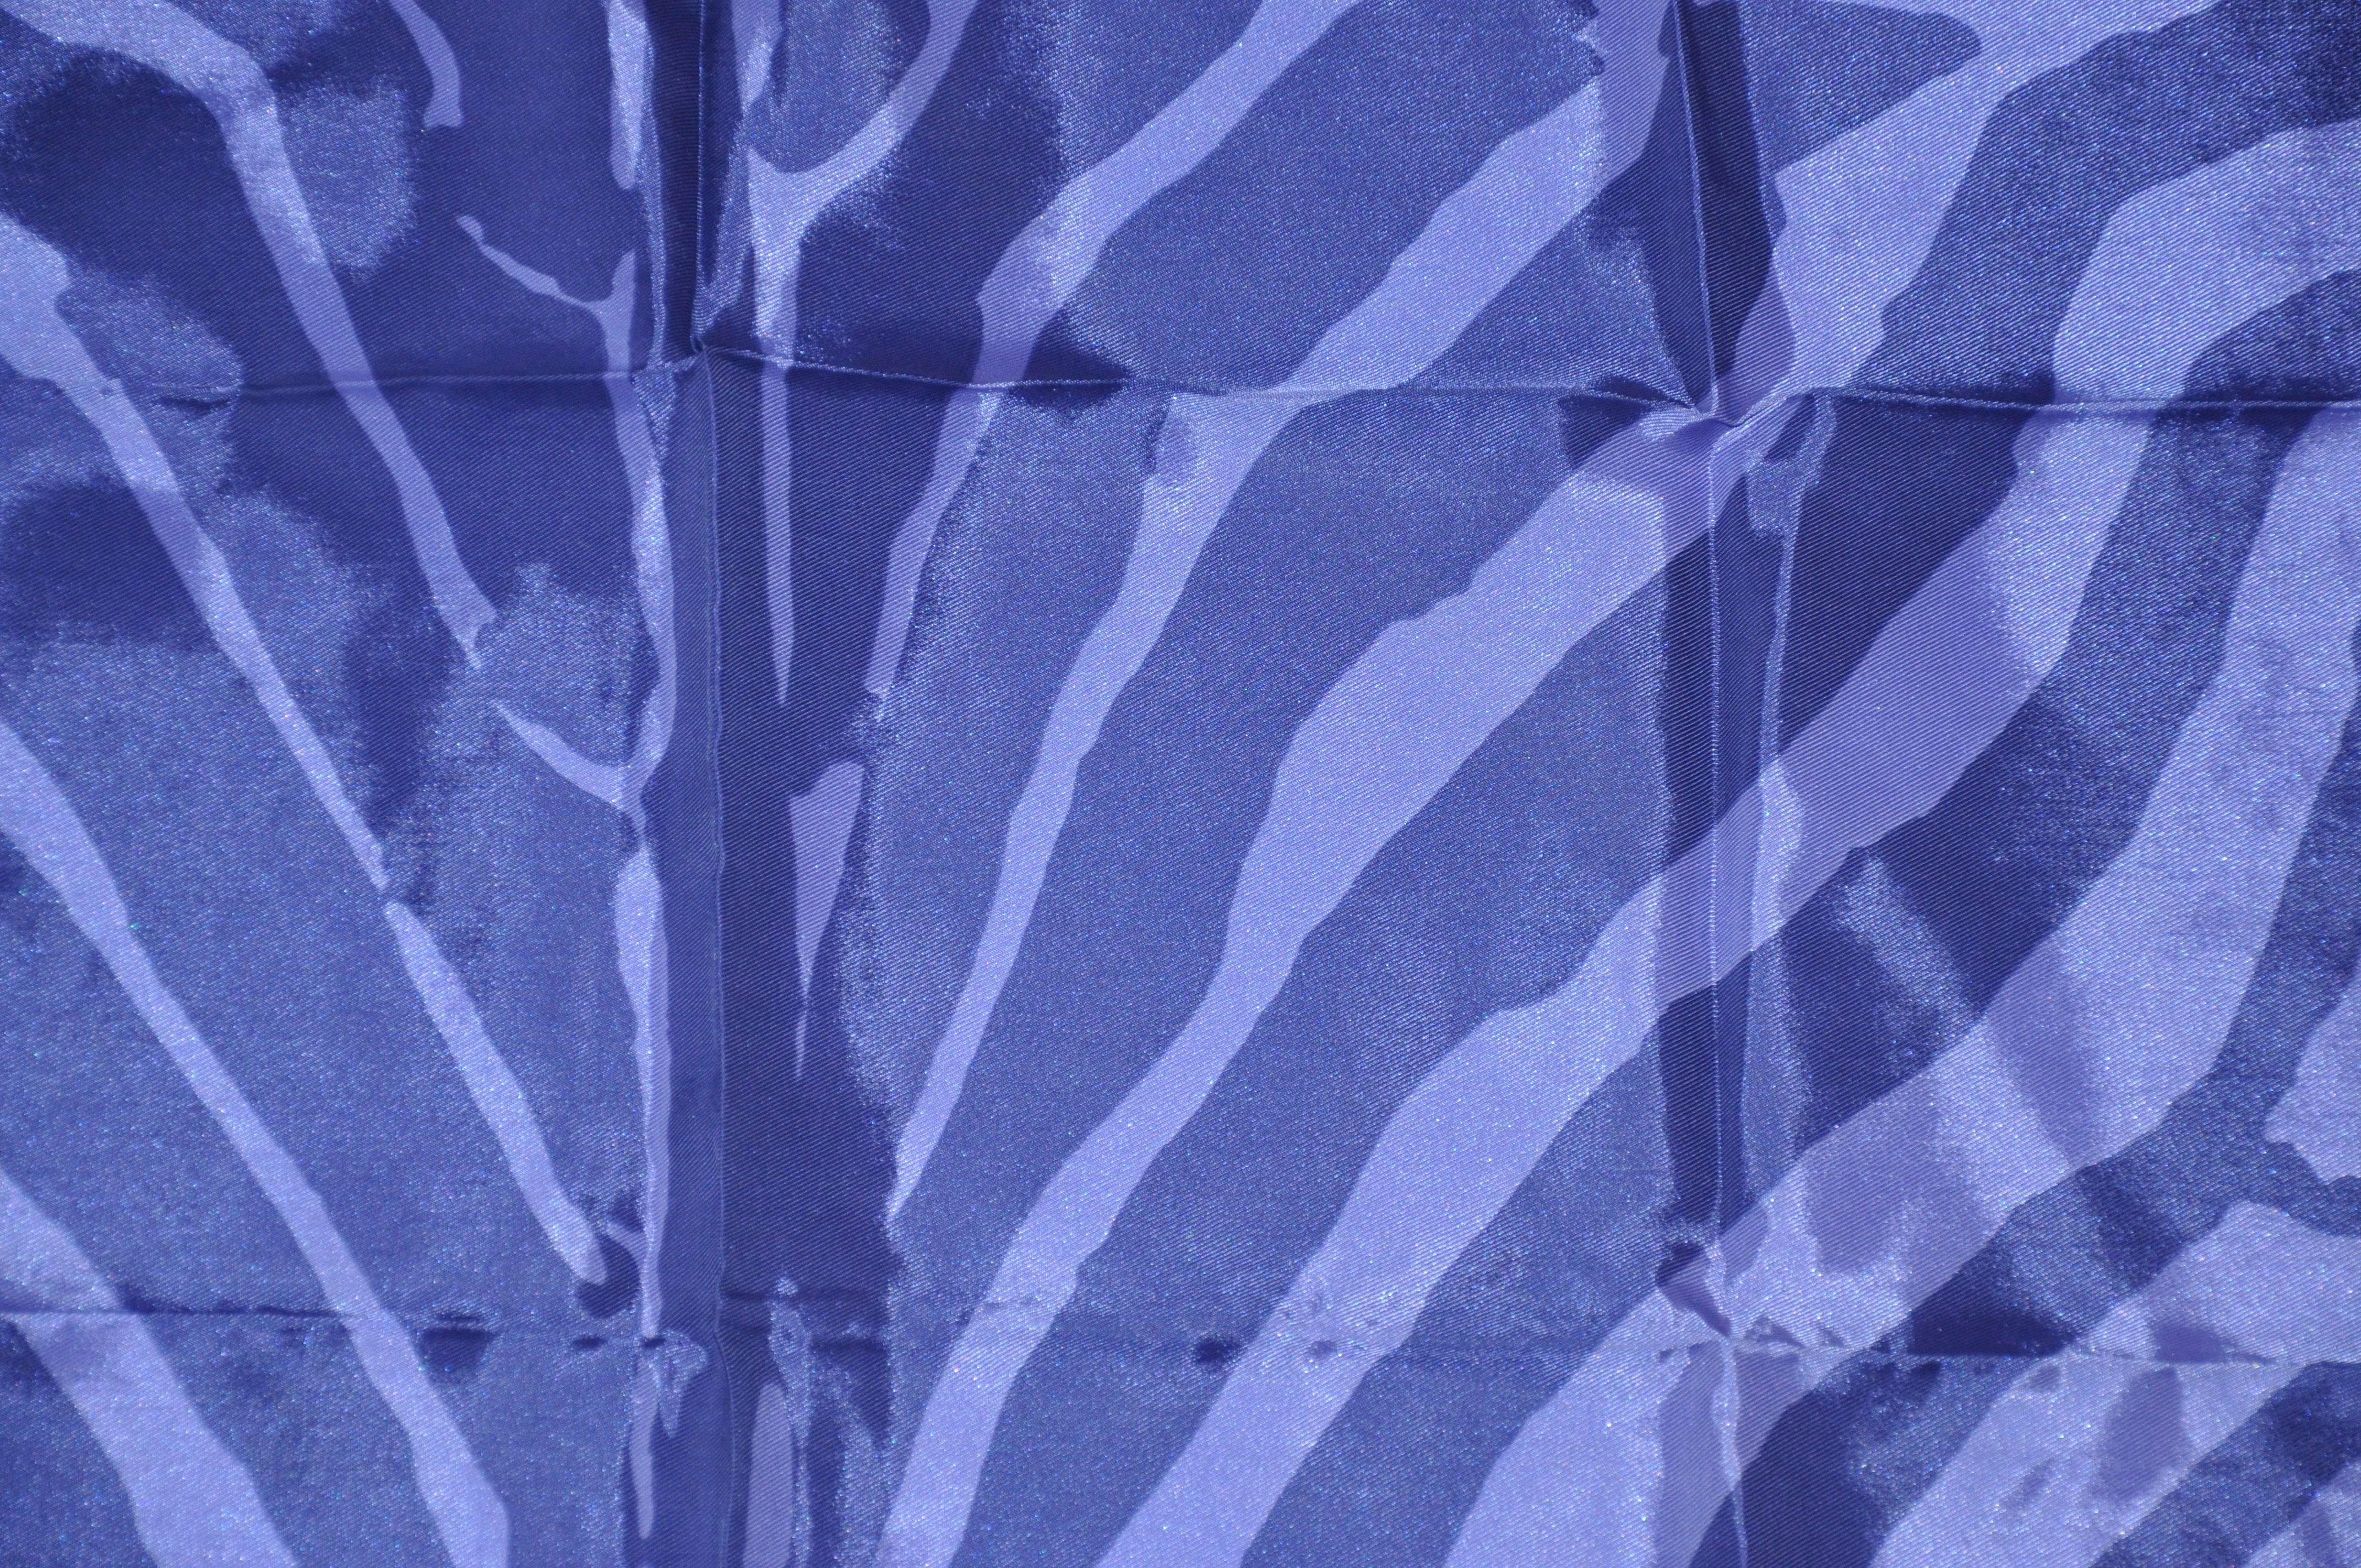 Vera wunderbare Kombination von Lavendel und violett Leopard Streifen Taschentuch misst 11 1/2 